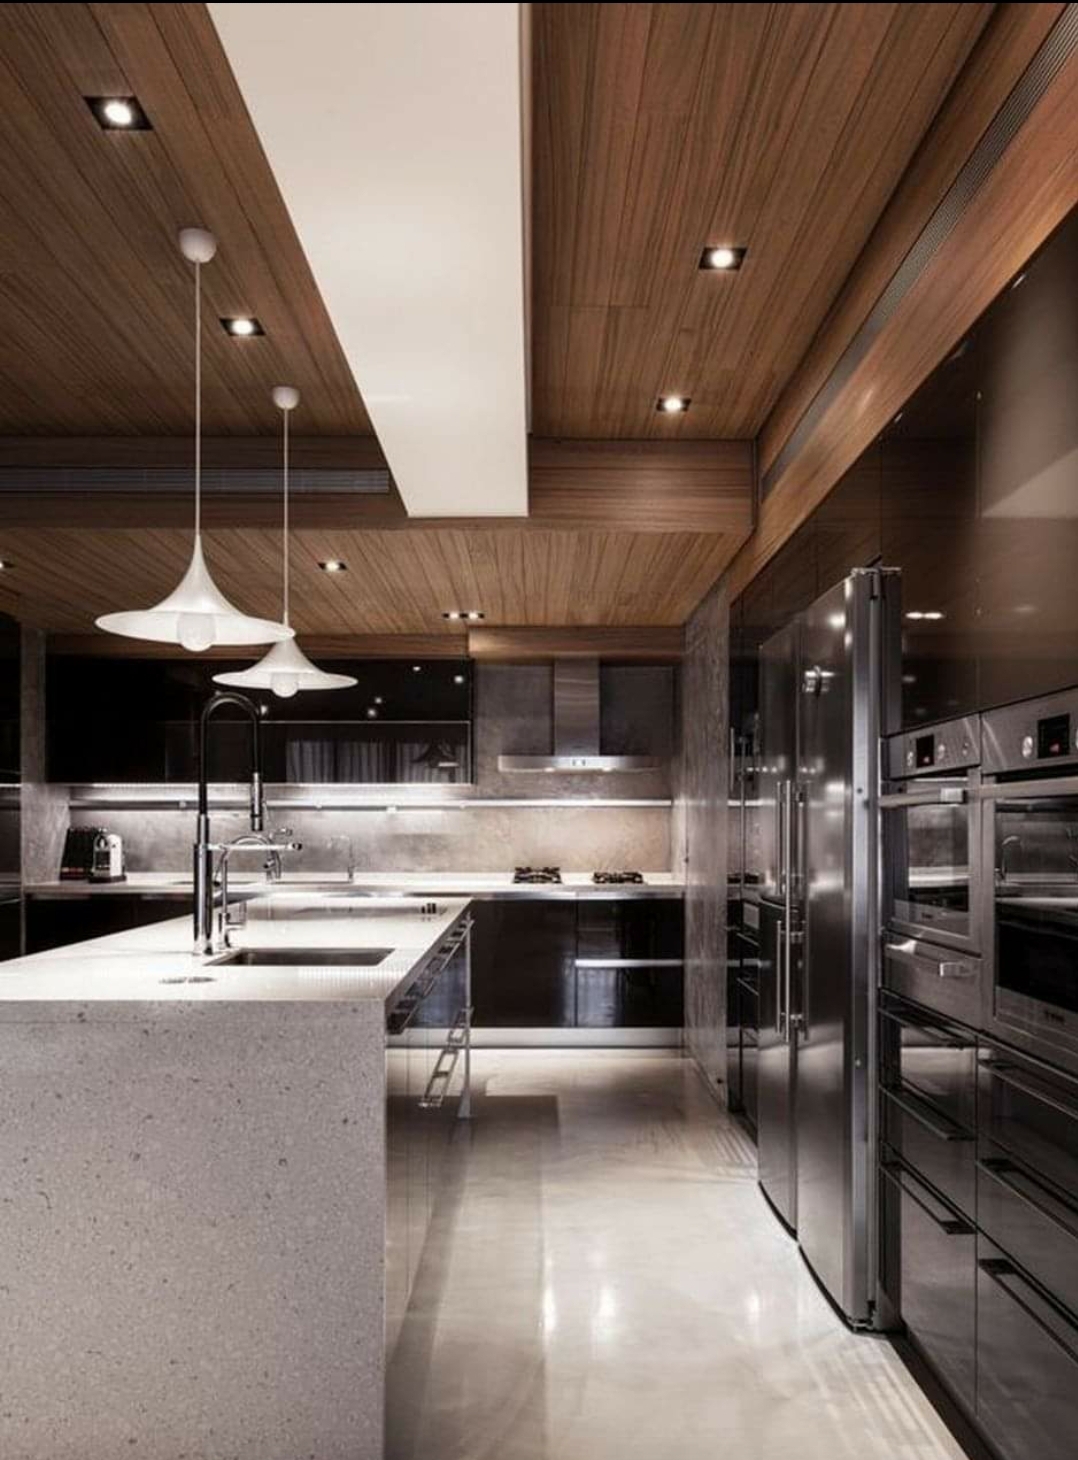 Modular kitchen interior design, kitchen interior design, modular kitchen interior, 